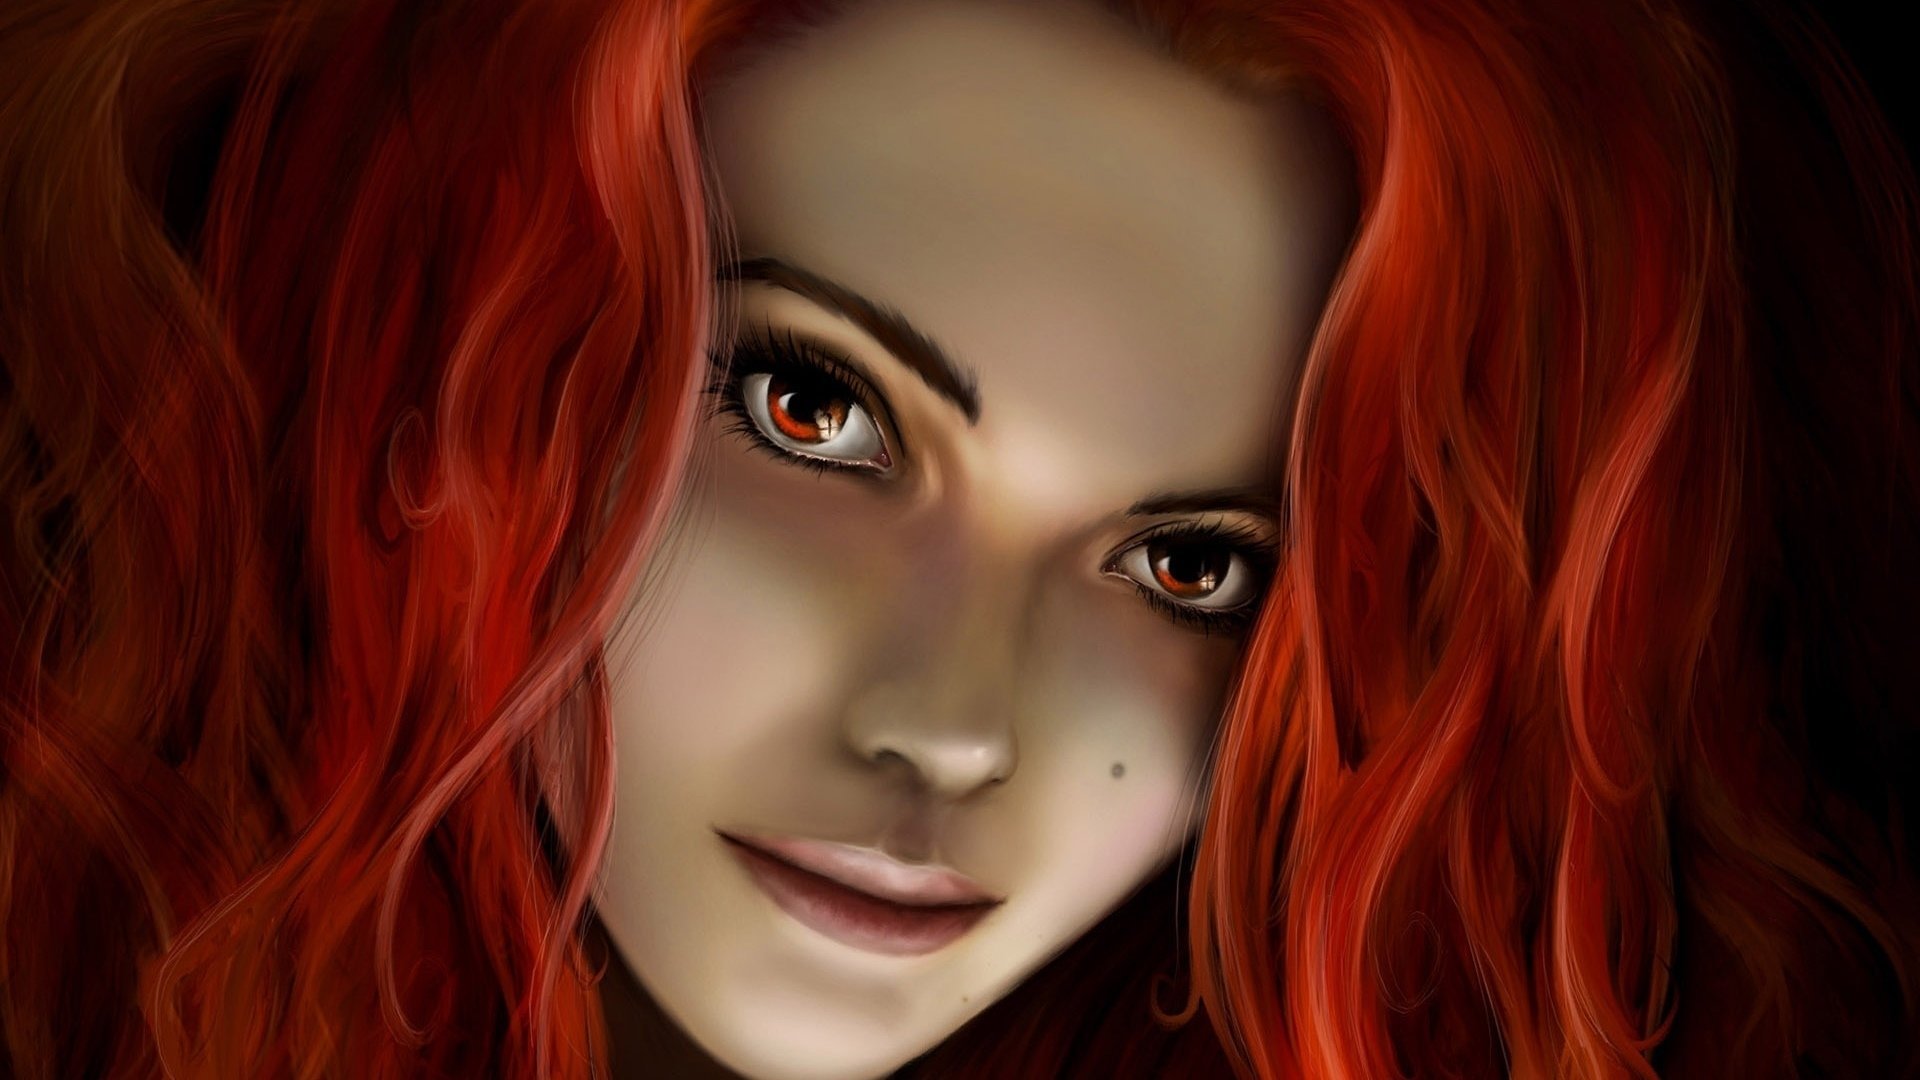 Где бестия. Рыжая девушка арт. Девушка с рыжими волосами арт. Девушка с рыжими волосами фэнтези.